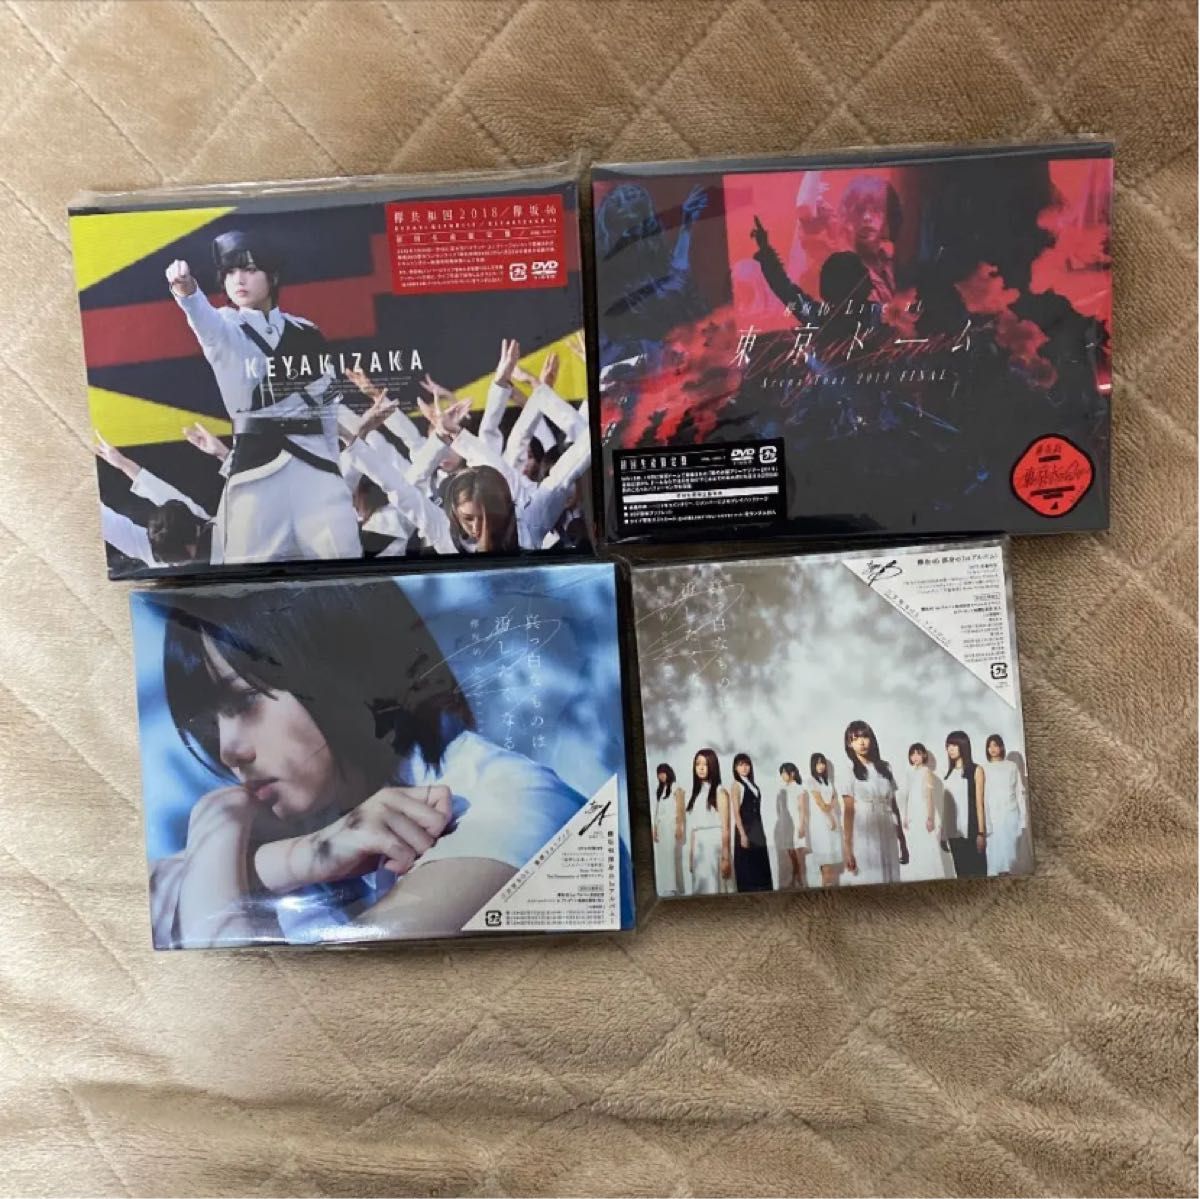 欅坂46 欅共和国2017、2018、東京ドームDVD アルバムセット